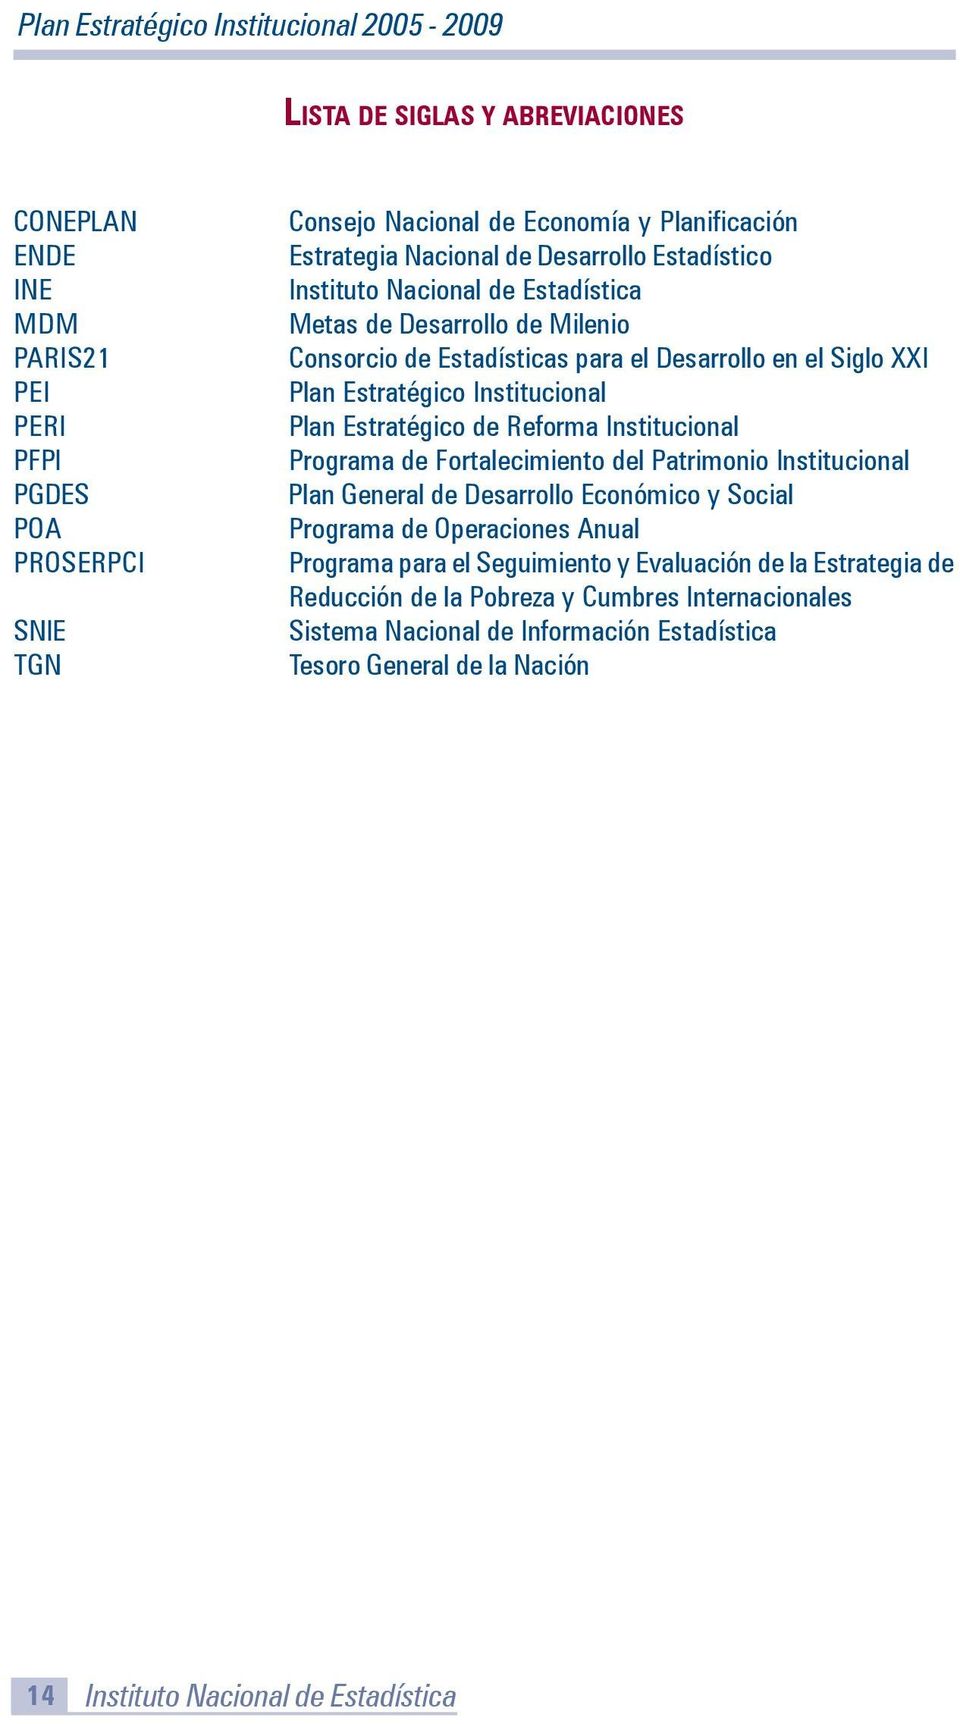 Reforma Institucional Programa de Fortalecimiento del Patrimonio Institucional Plan General de Desarrollo Económico y Social Programa de Operaciones Anual Programa para